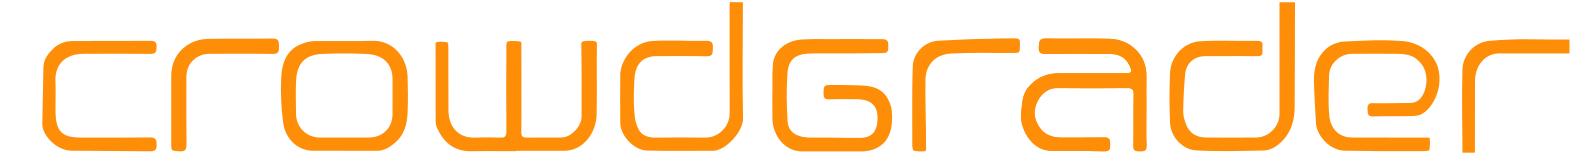 Crowdgrader-logo